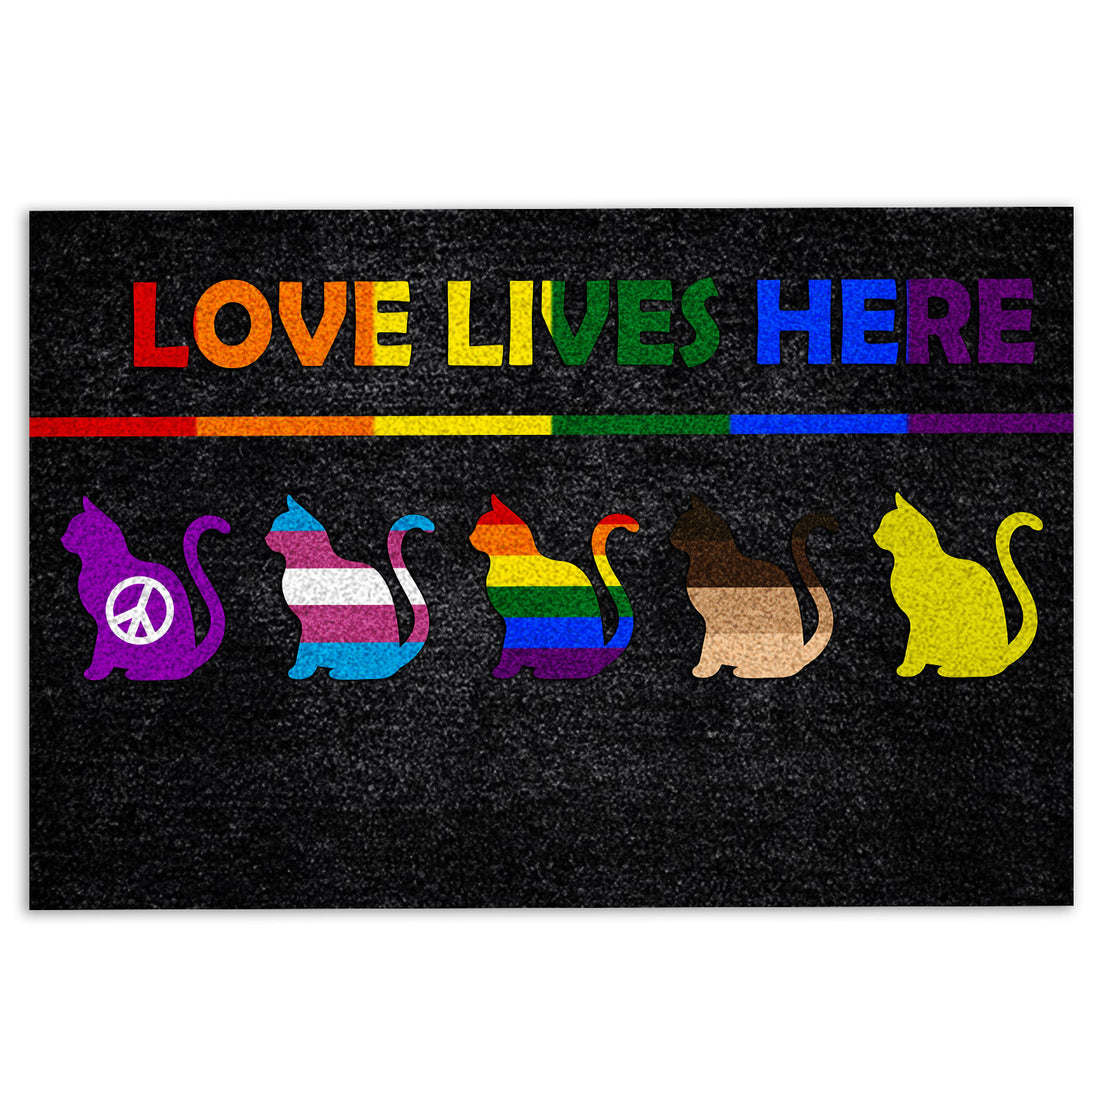 Ohaprints-Doormat-Outdoor-Indoor-Lgbt-Support-Lgbtq-Pride-Month-Love-Lives-Here-Rainbow-Flag-Cat-Rubber-Door-Mat-233-18'' x 30''